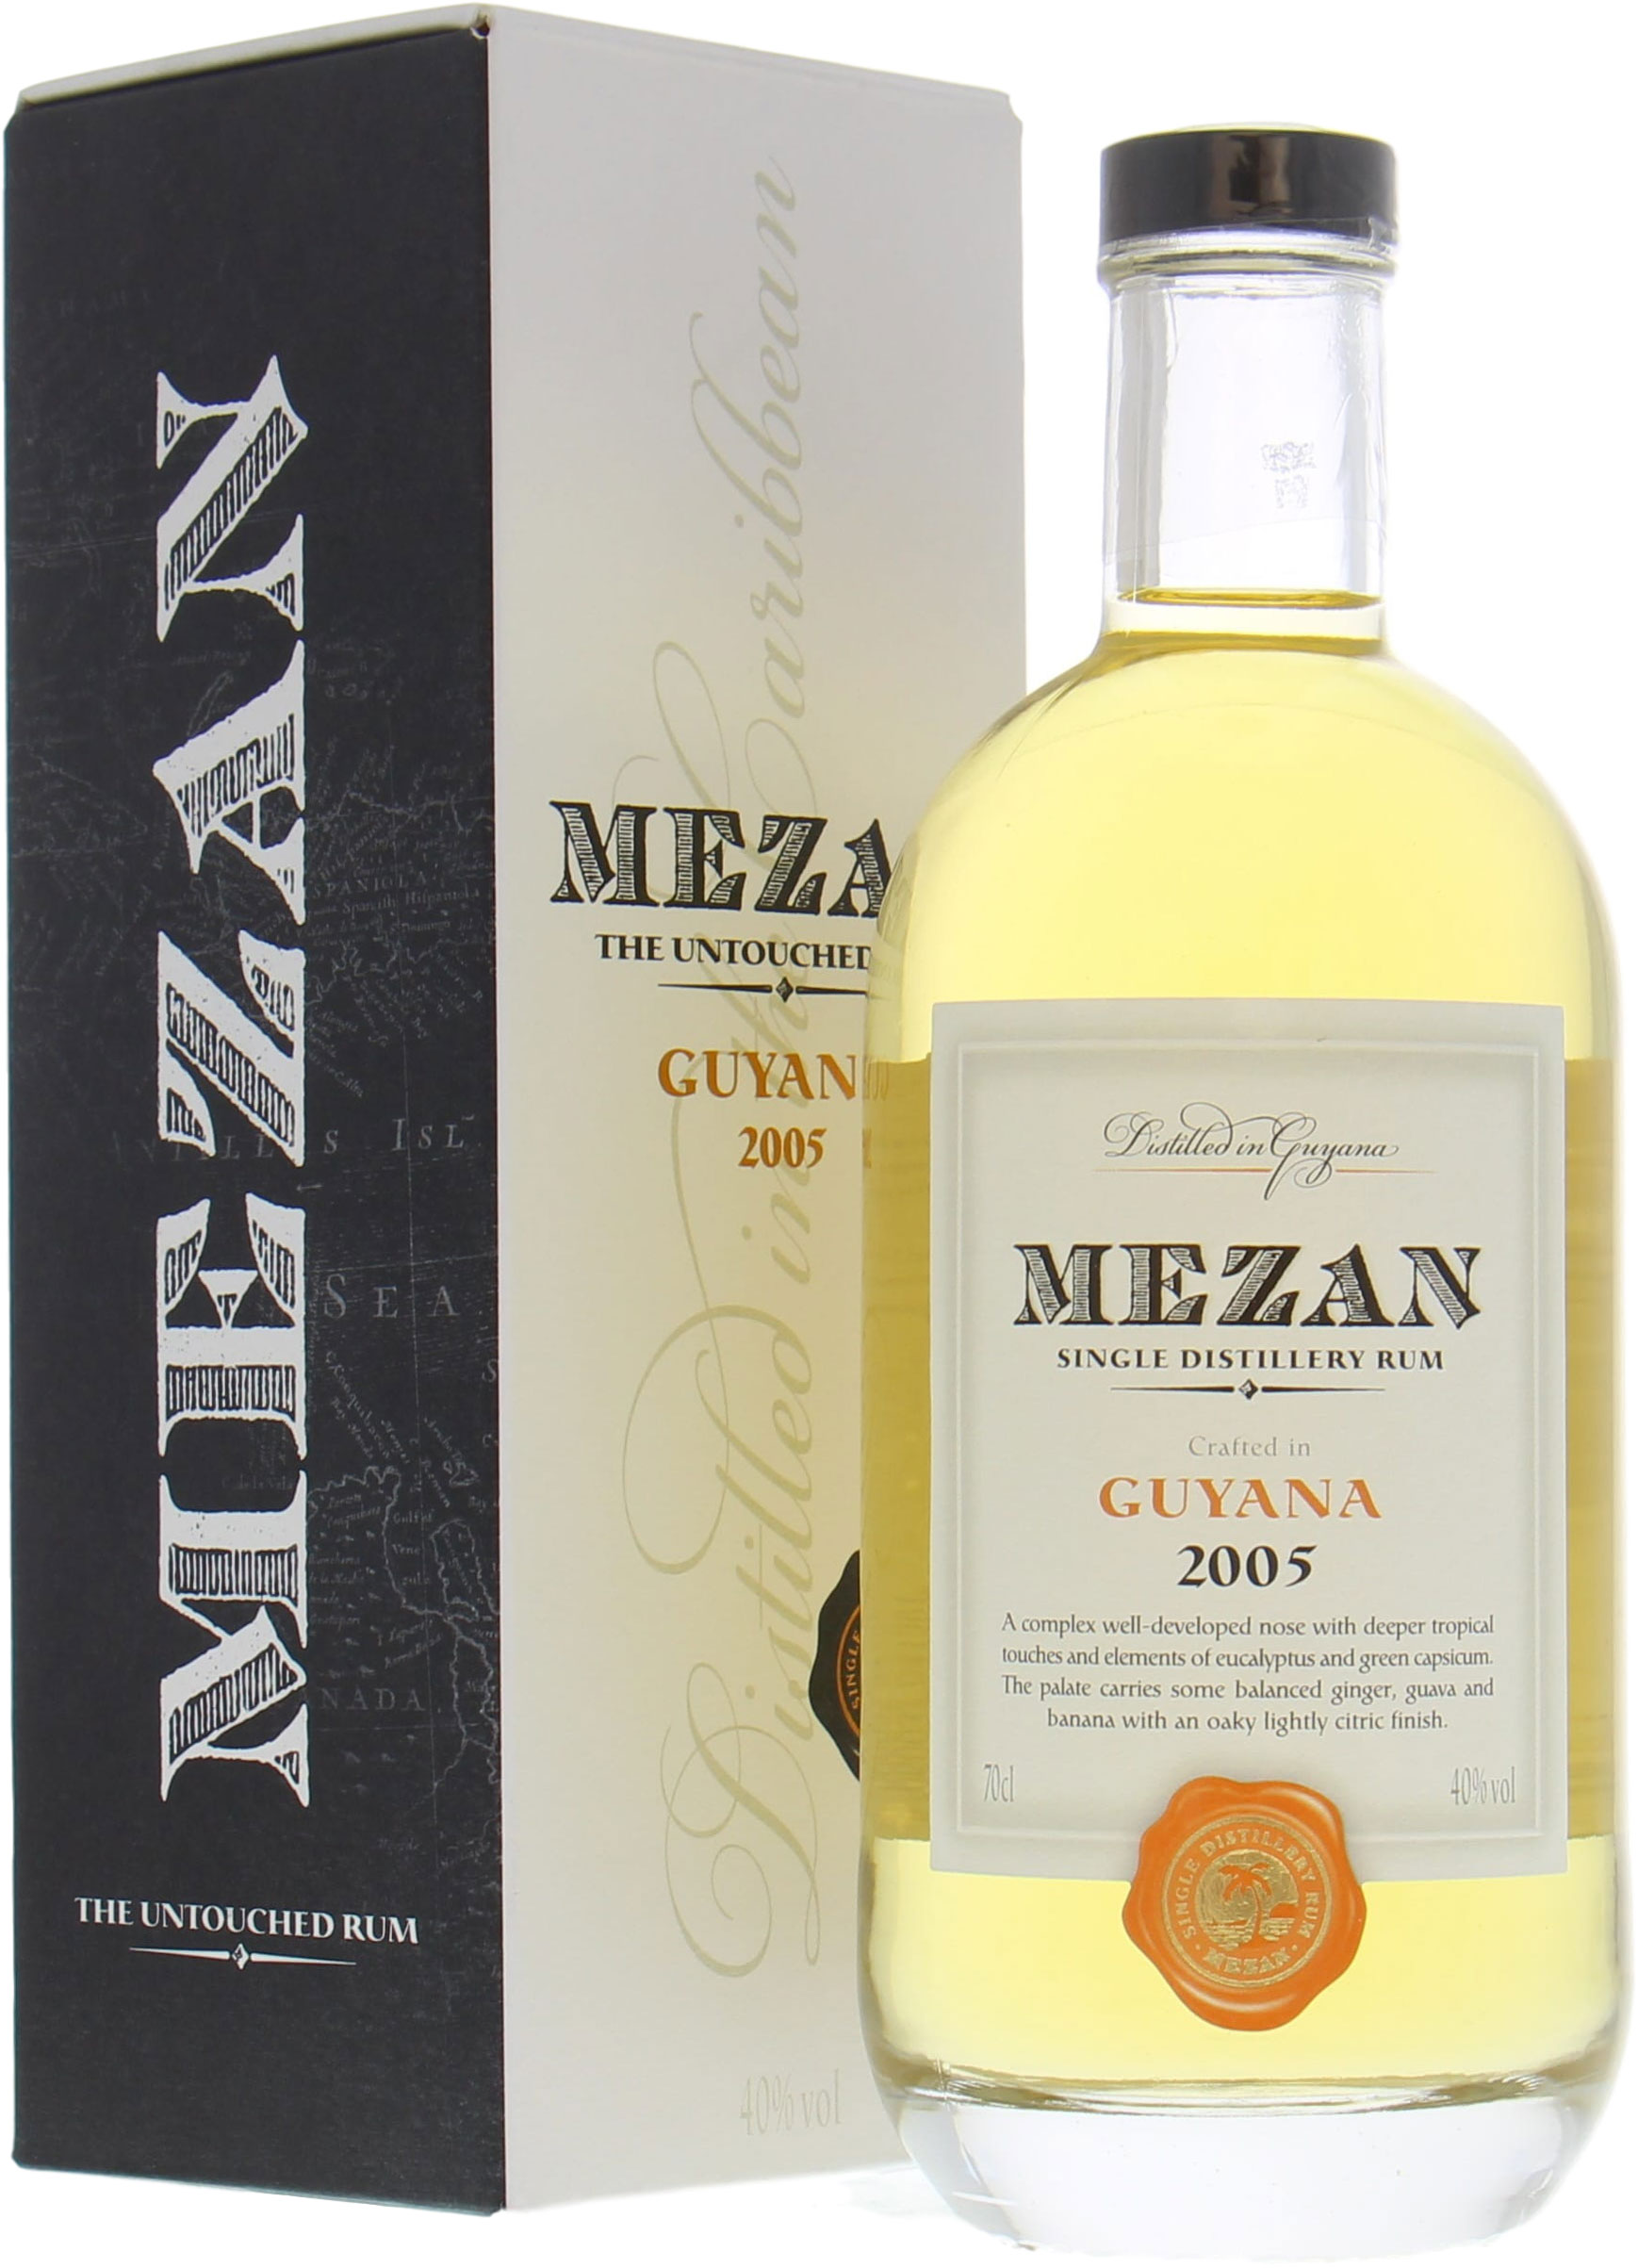 Mezan - Guyana 2005 Single Distillery Rum 40% 2005